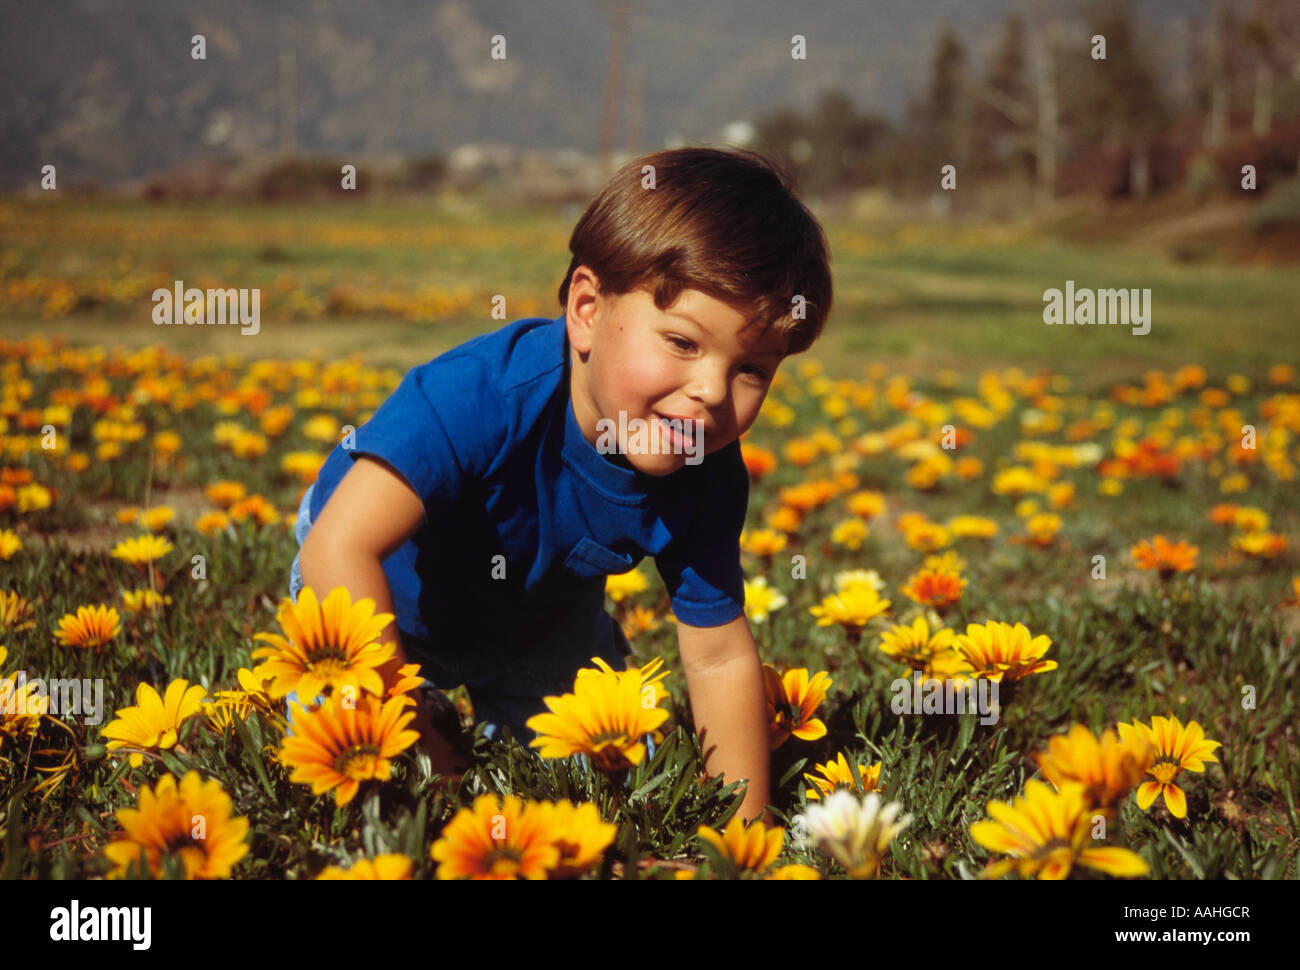 Heureux Garçon pré-k 23 ans ancien enfant jouant dans le champ de fleurs fleur nature cadre naturel smiling diversité ethnique diversifiée sur le plan racial bi biracial Banque D'Images